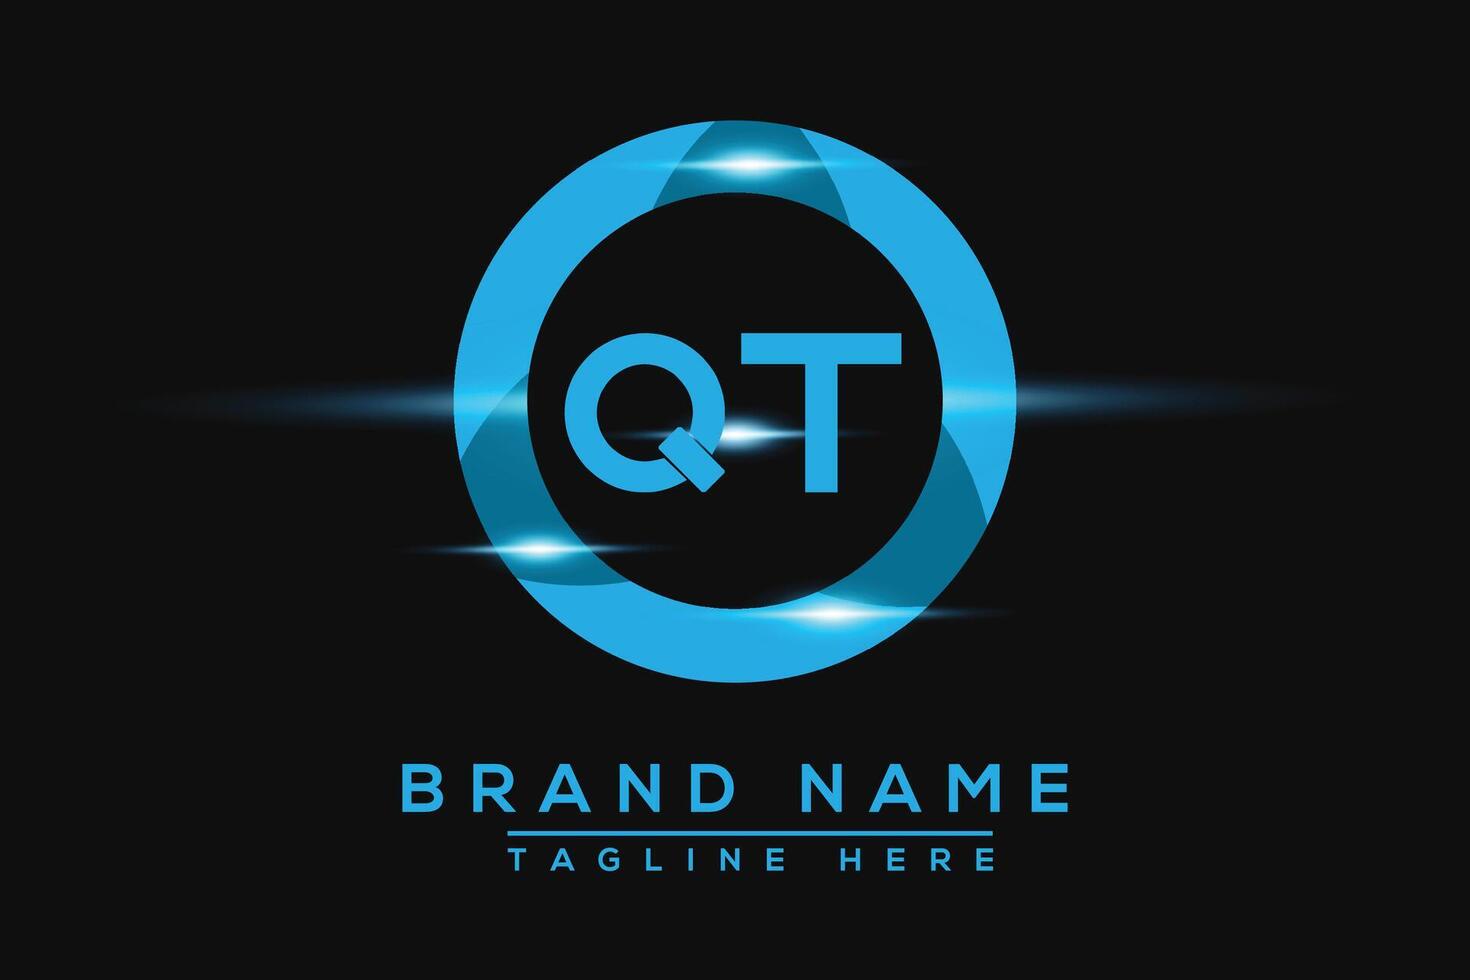 QT Blue logo Design. Vector logo design for business.